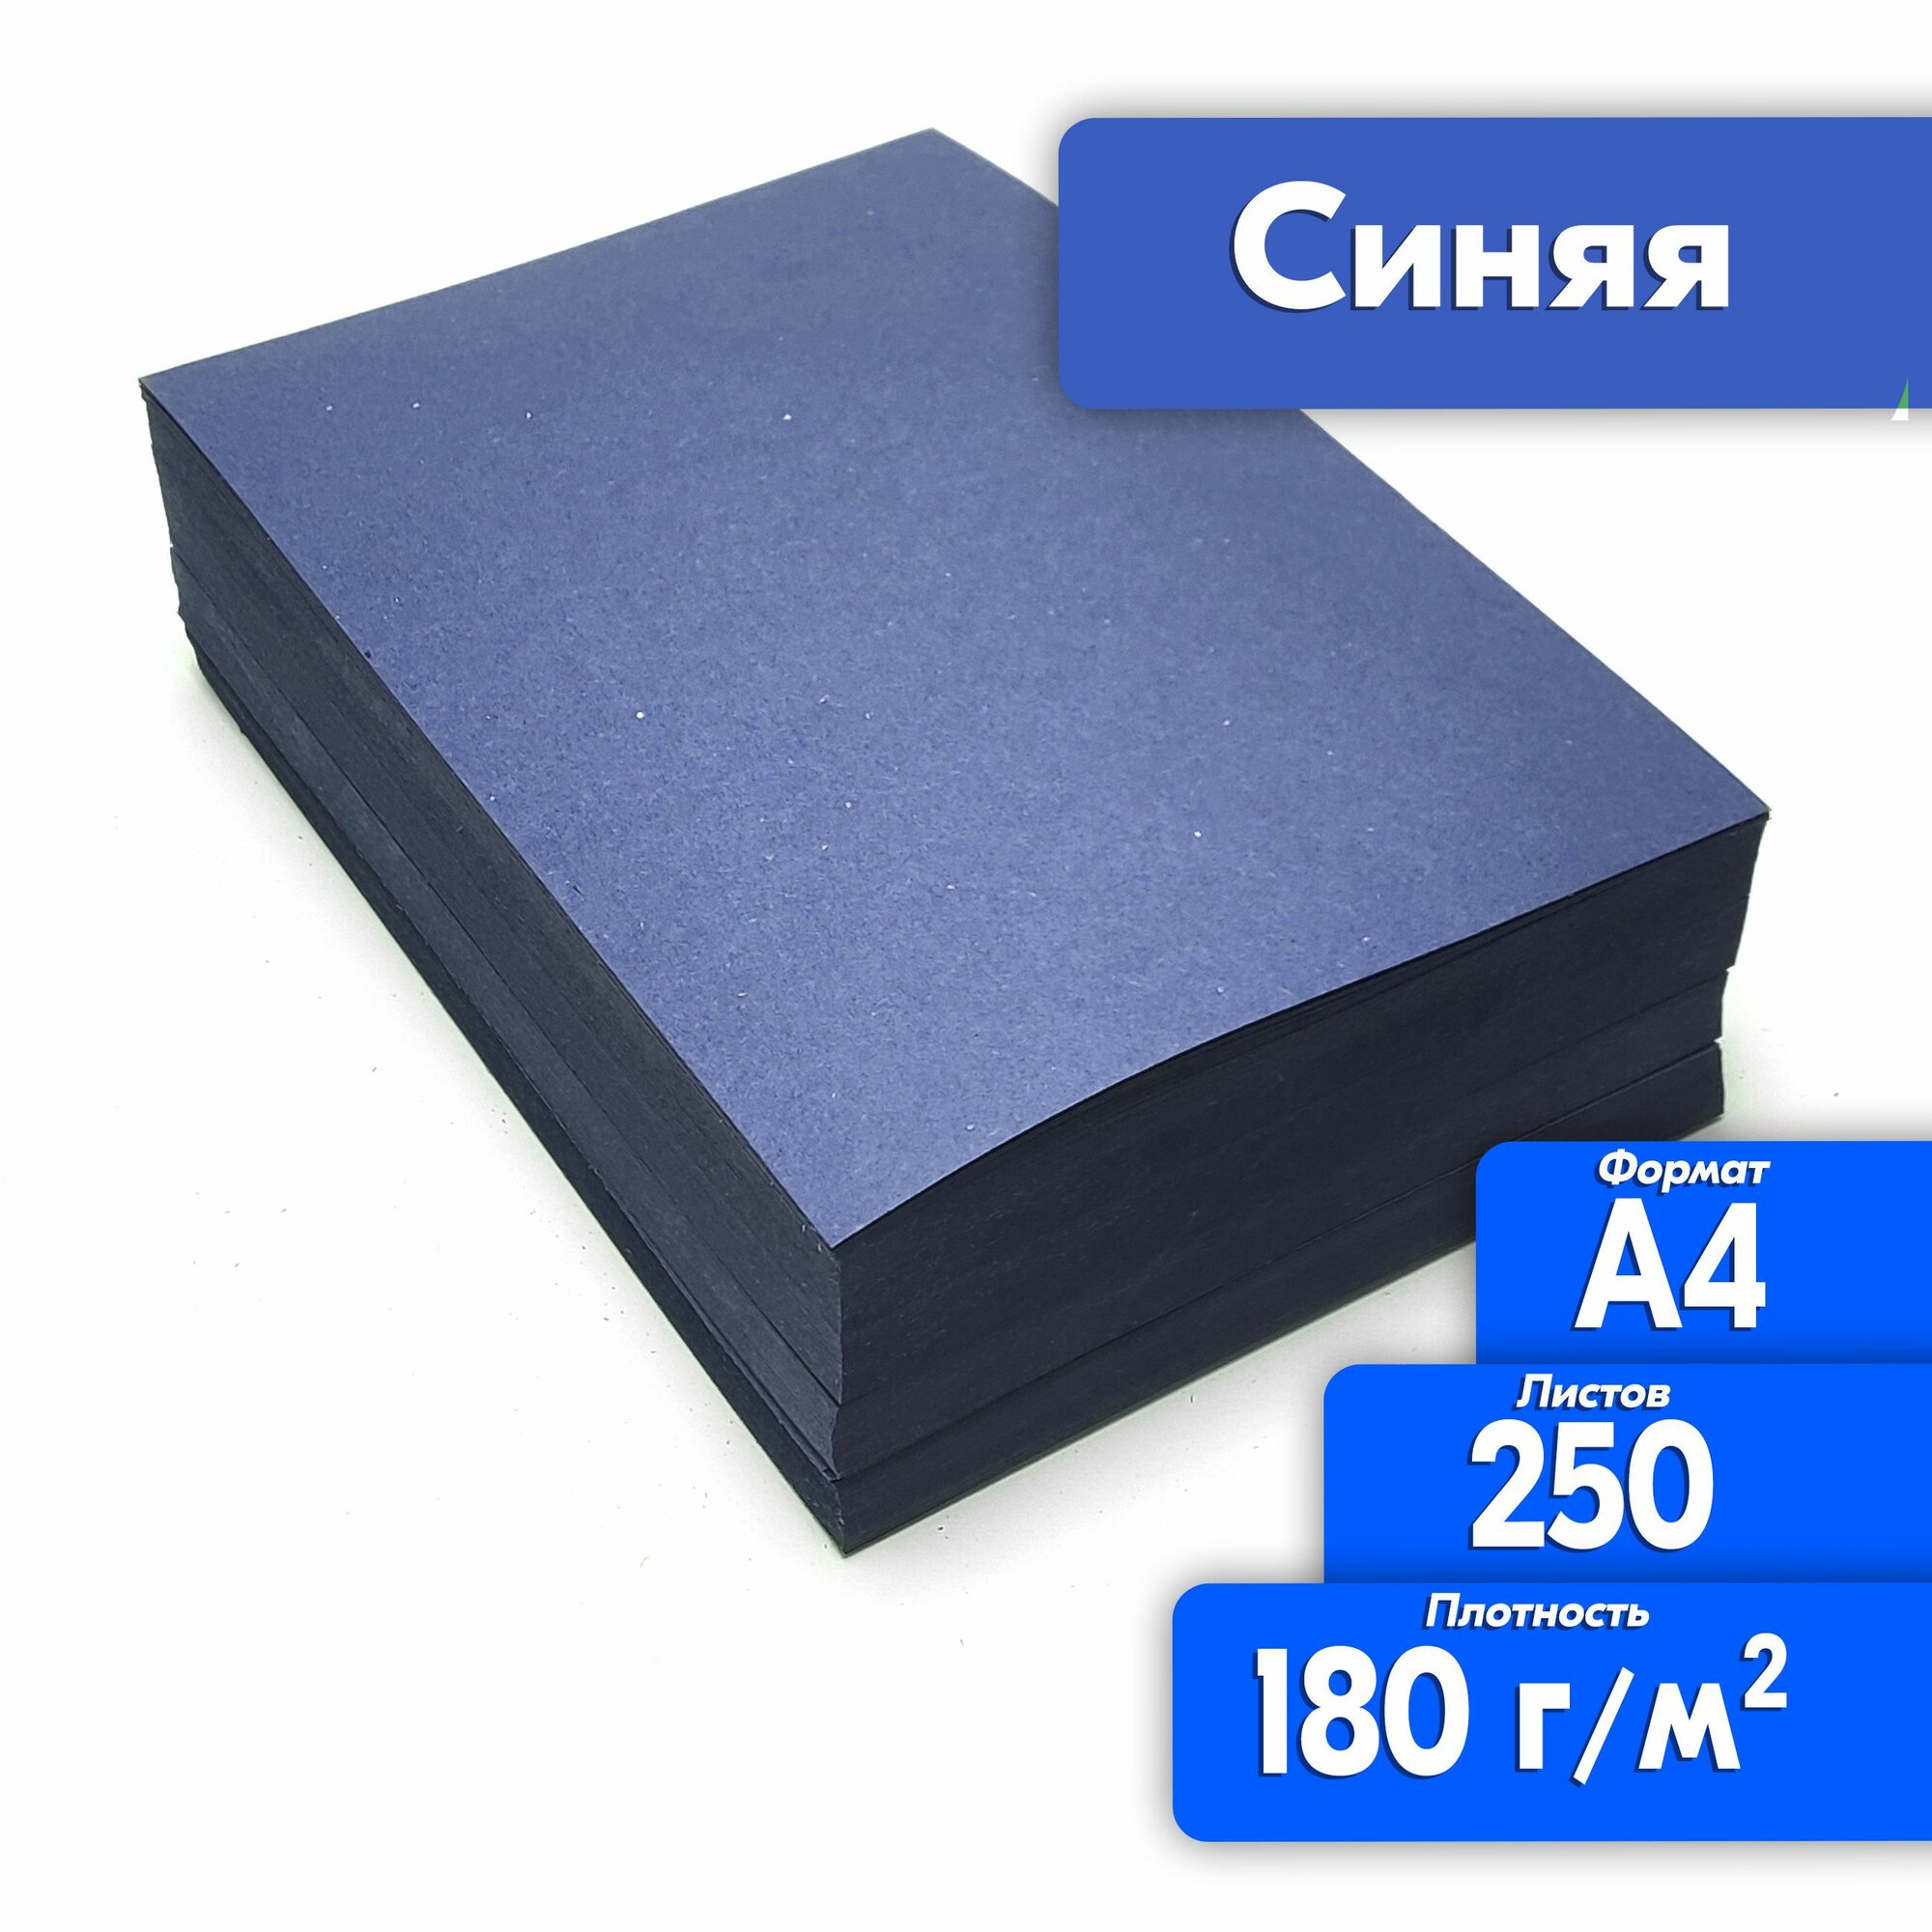 Цветная бумага двухсторонняя А4 250 листов для принтера, синяя, высокая плотность 180 г/м2